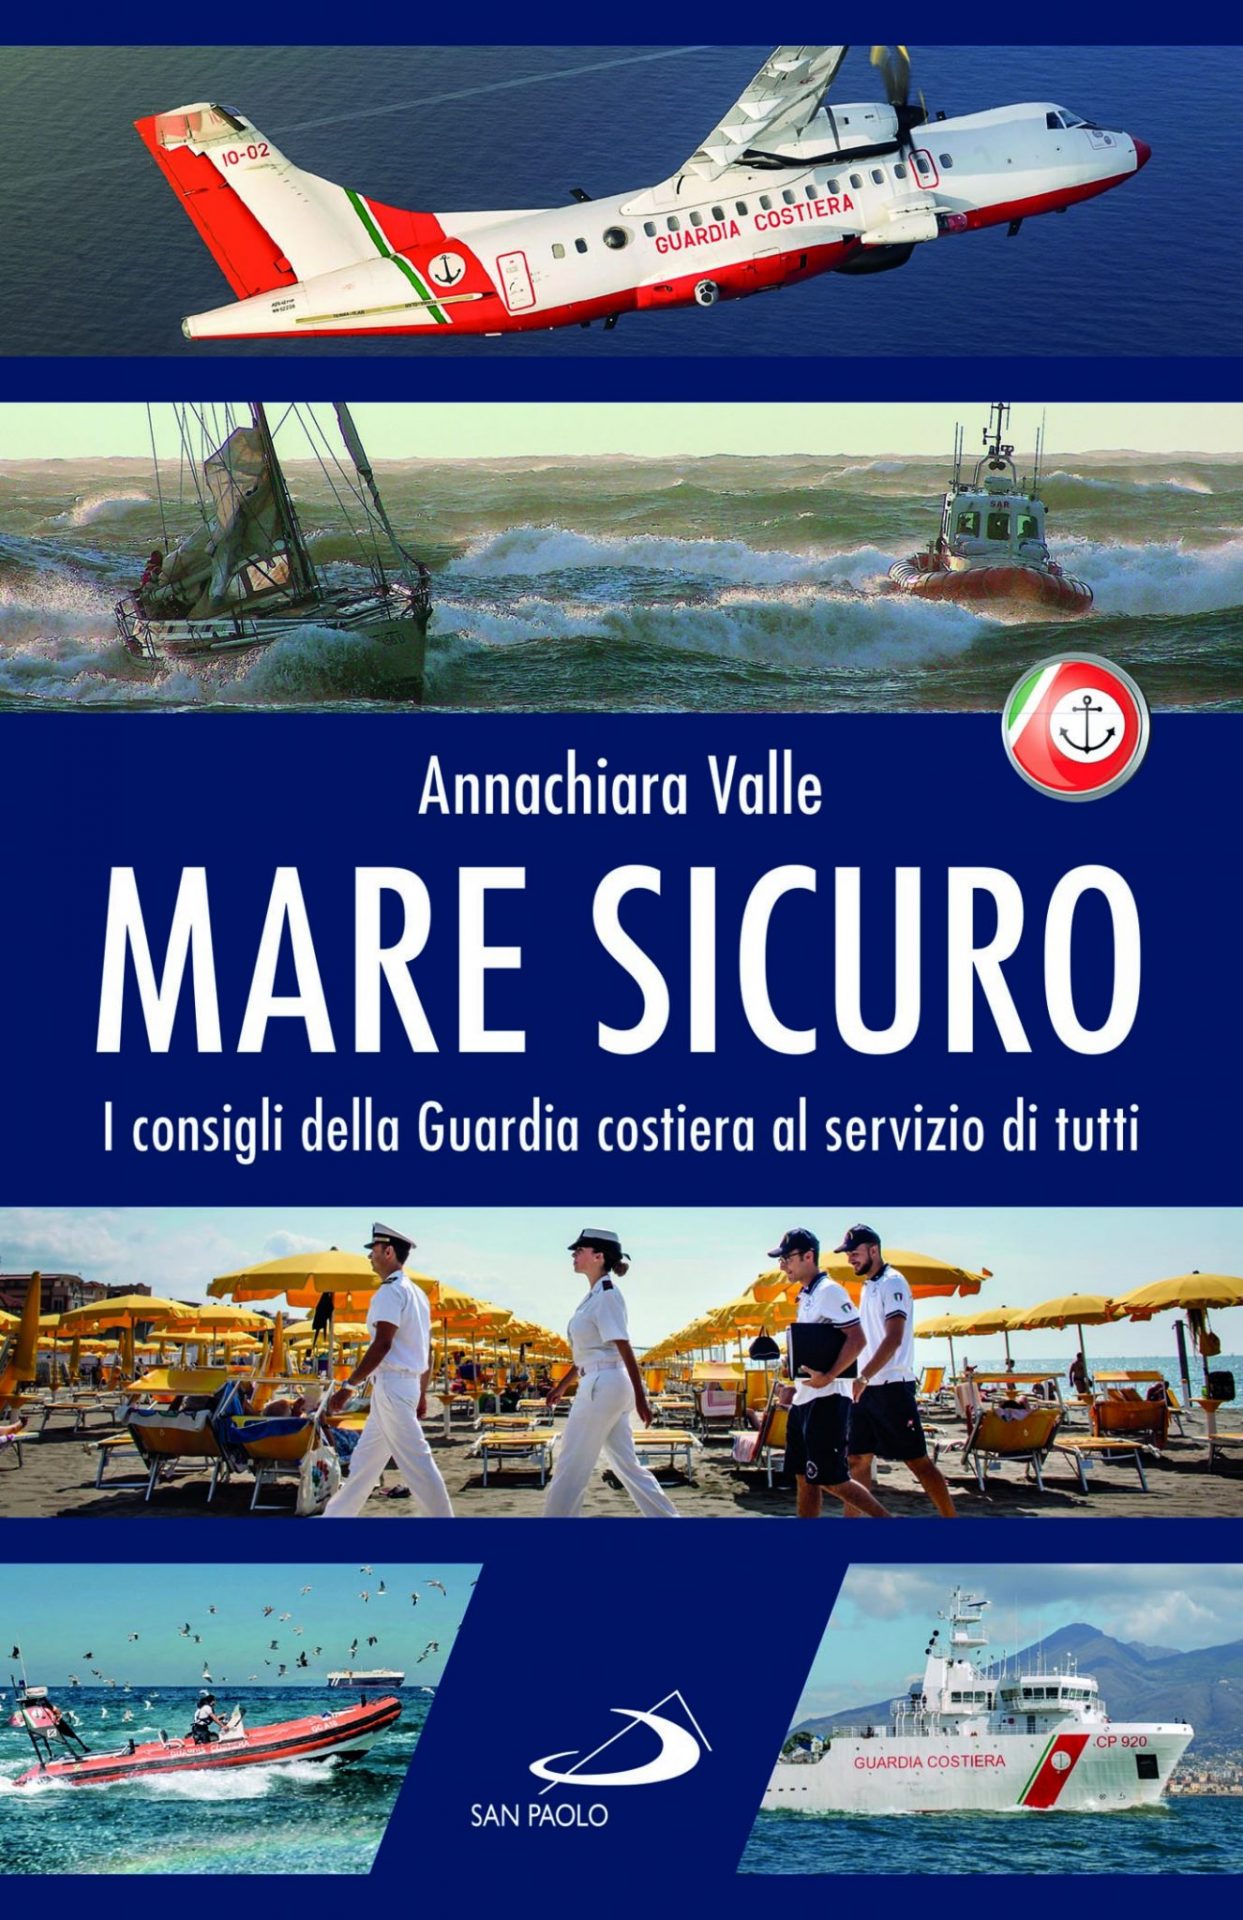 La copertina del libro "Mare Sicuro" di Annachiara Valle, Edizioni San Paolo